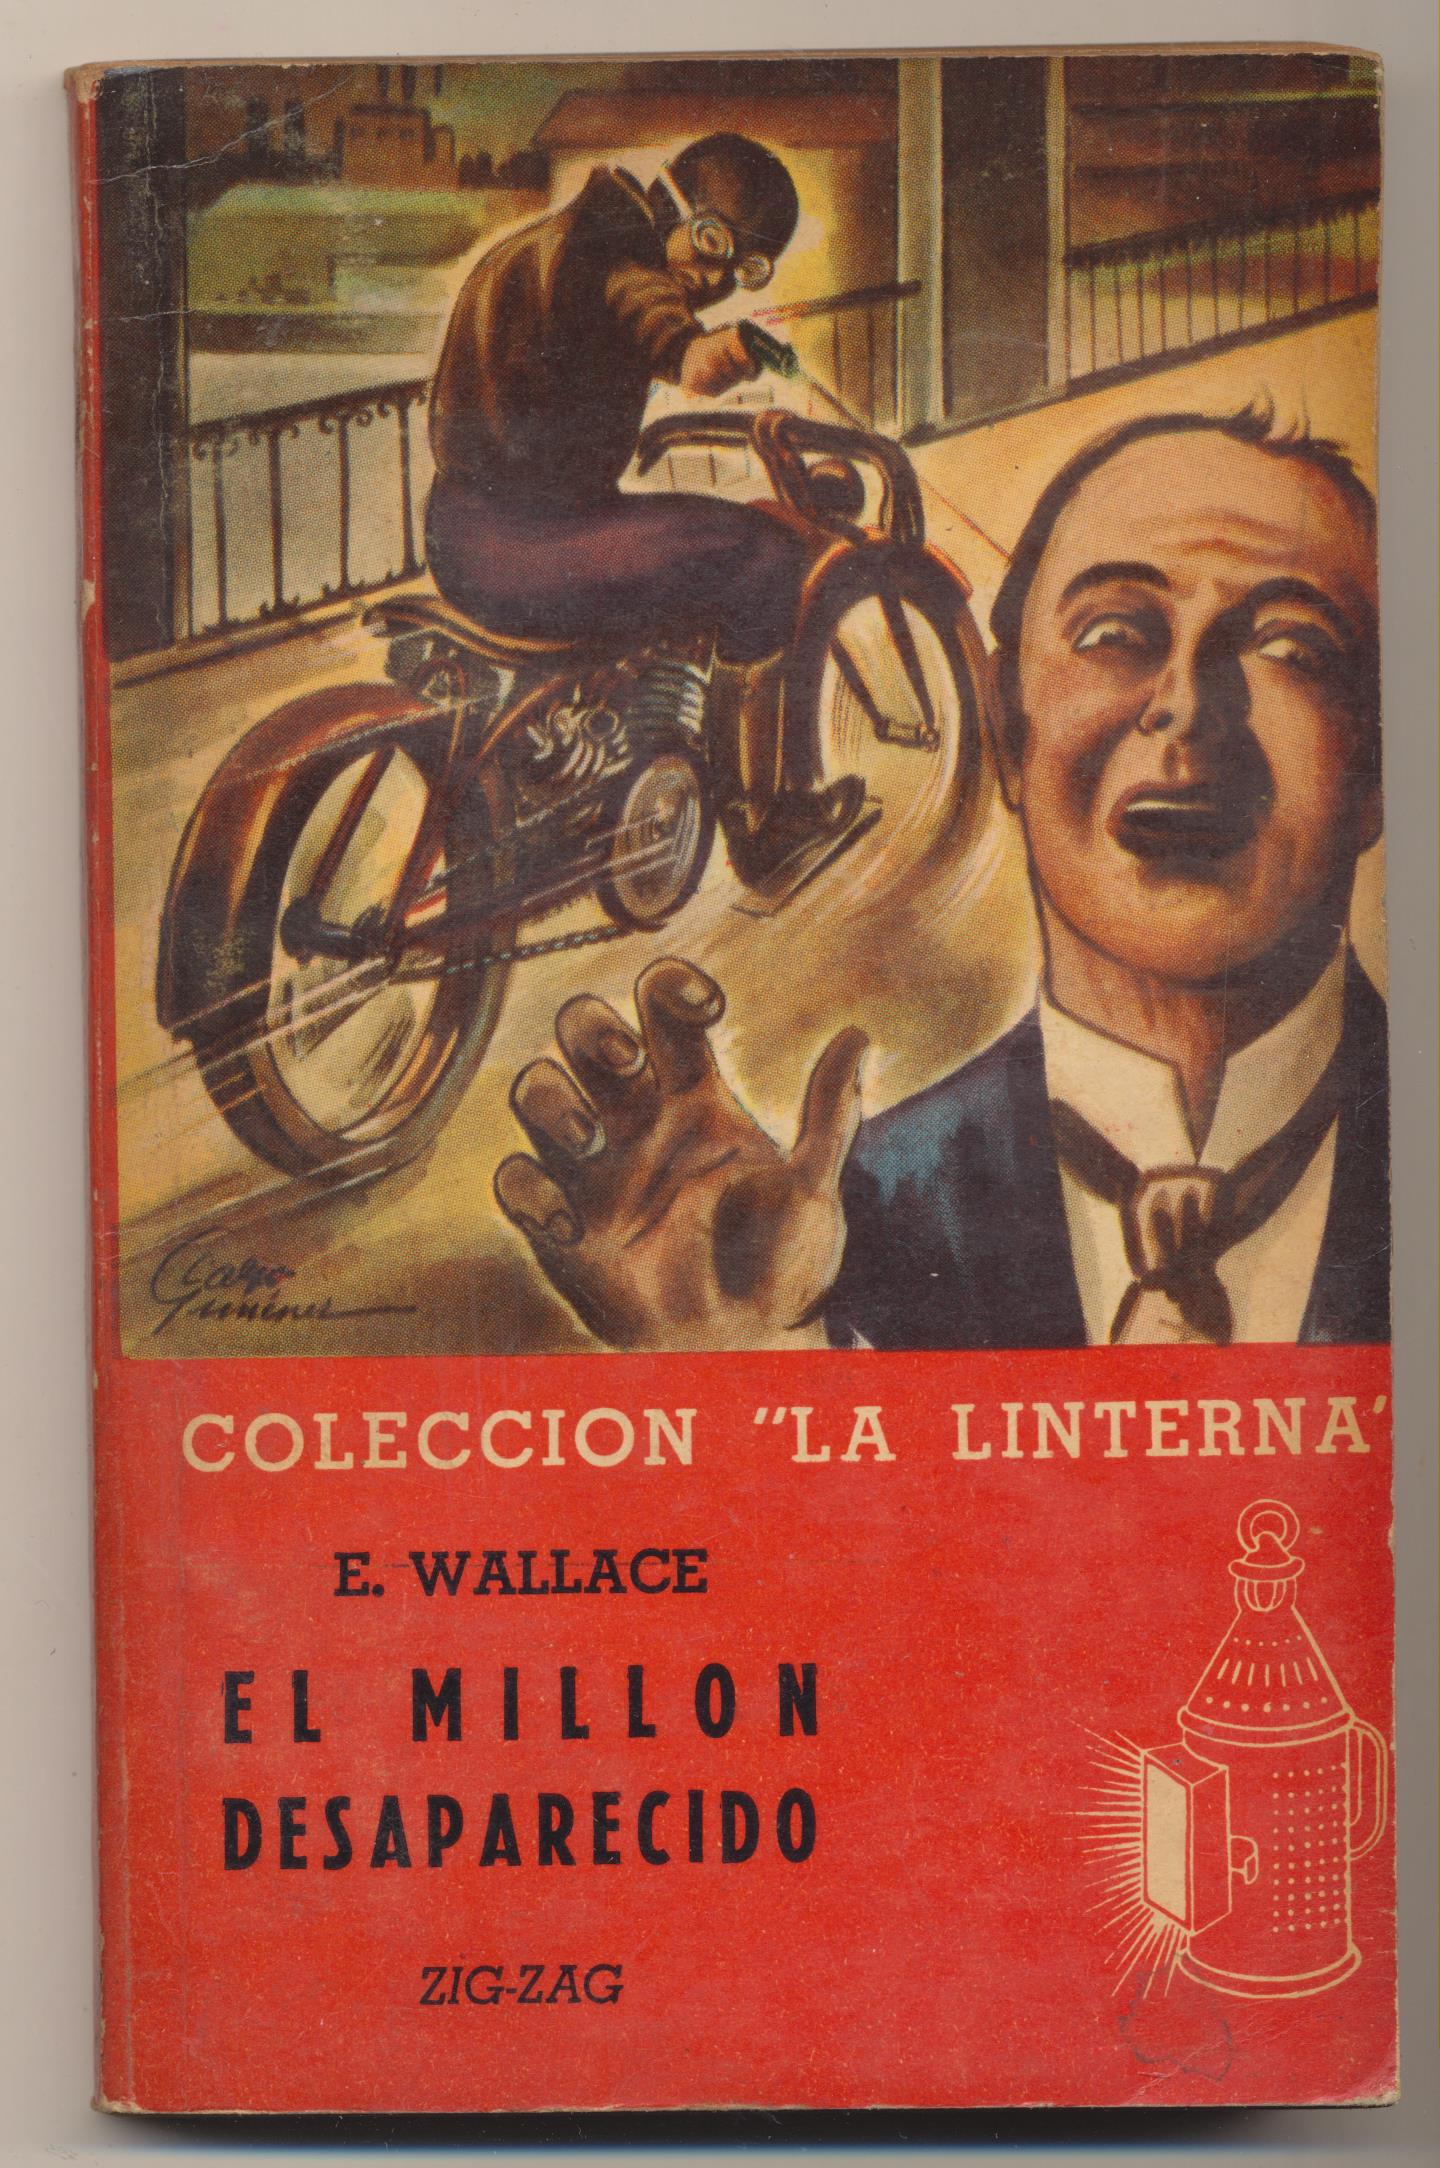 La Linterna nº 69. El millón desaparecido por E. Wallace. Editorial Zig-Zag-Chile 1948